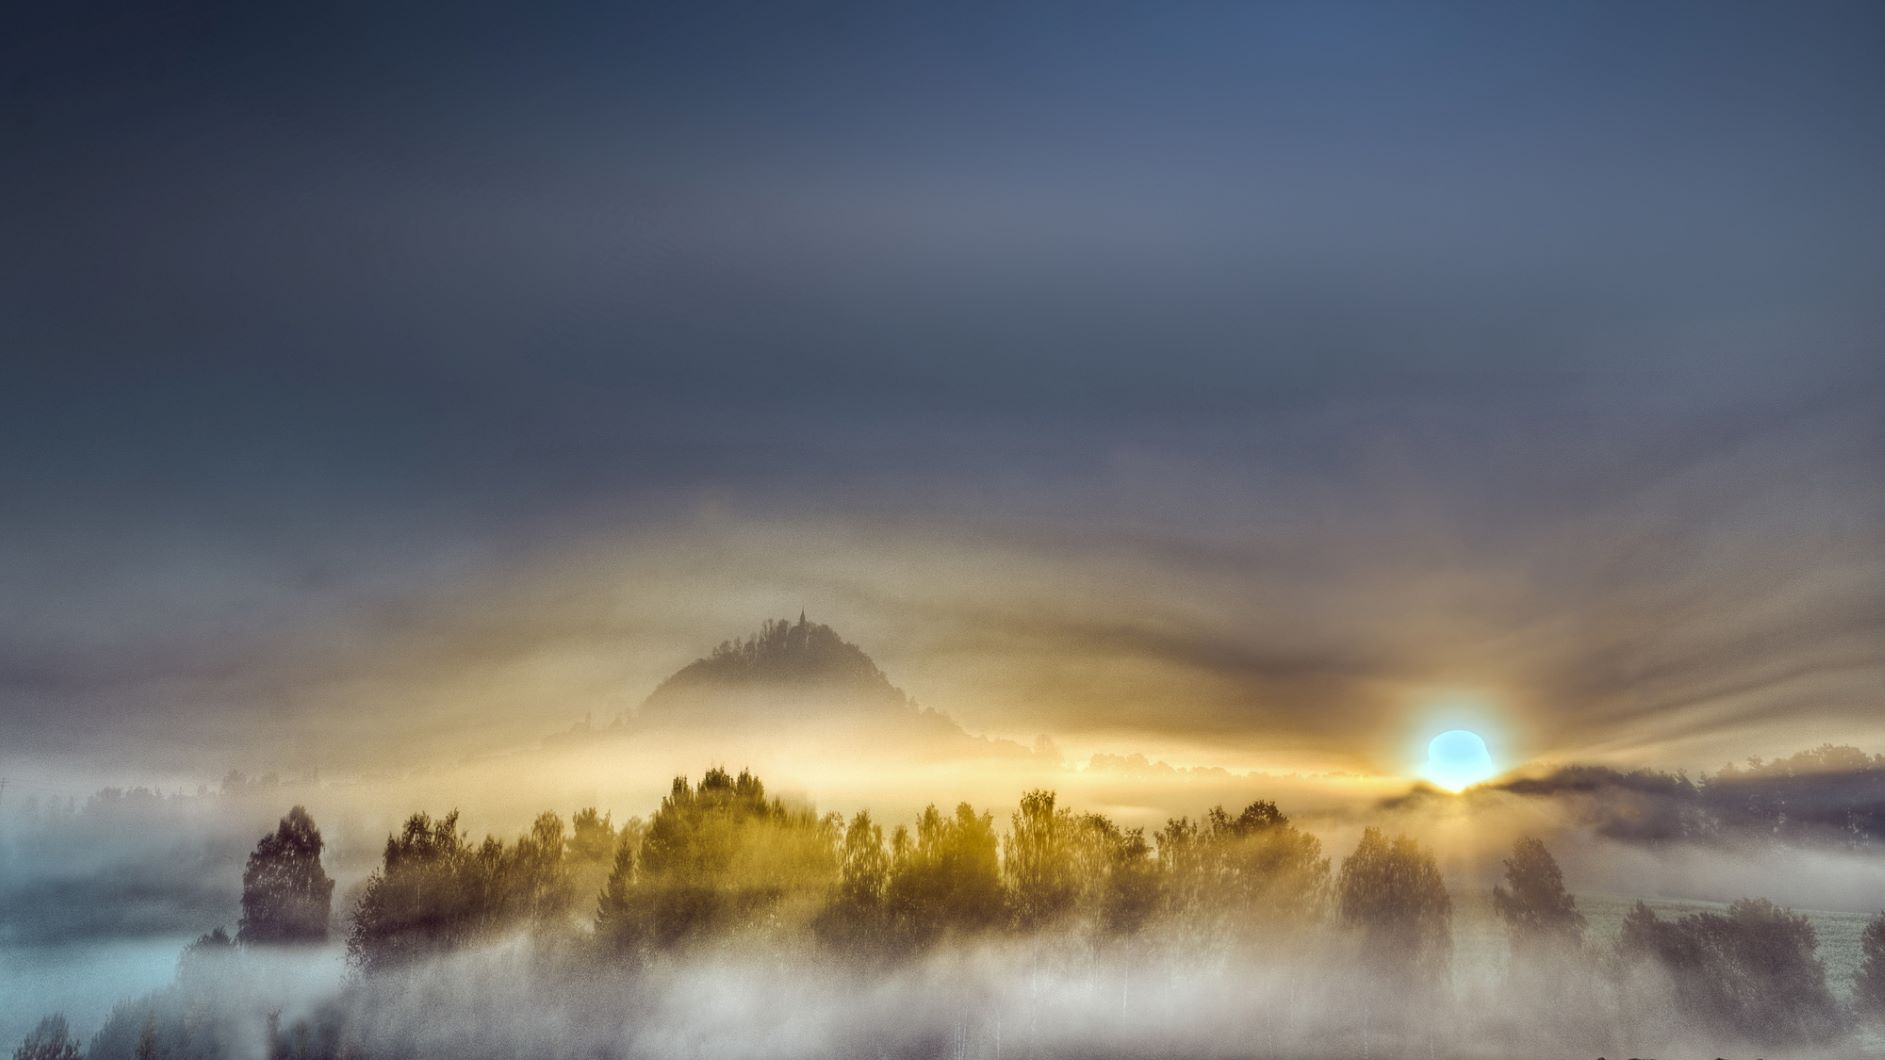 Heimatkalender 2019, Parkstein im Nebel